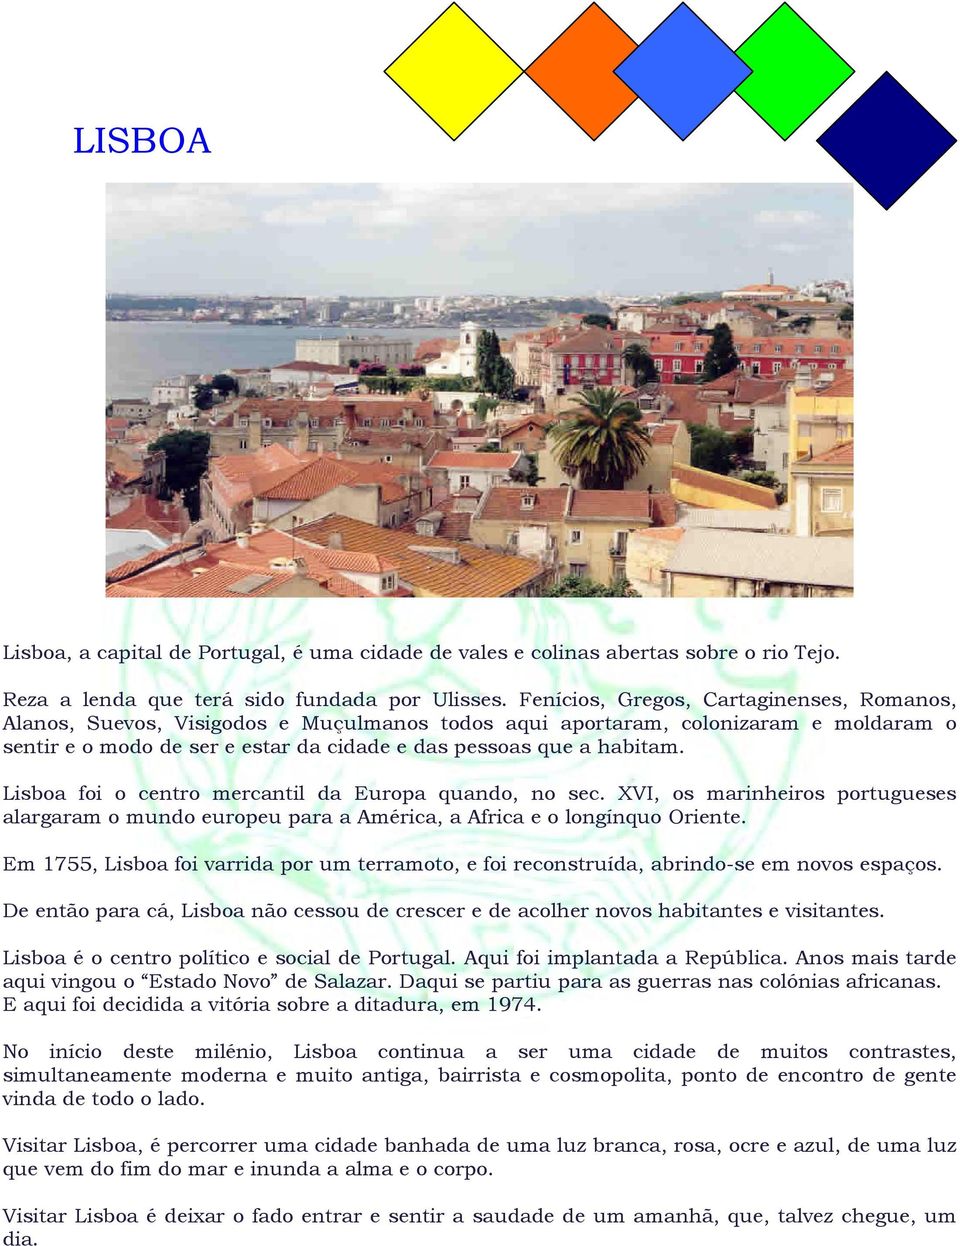 Lisboa foi o centro mercantil da Europa quando, no sec. XVI, os marinheiros portugueses alargaram o mundo europeu para a América, a Africa e o longínquo Oriente.